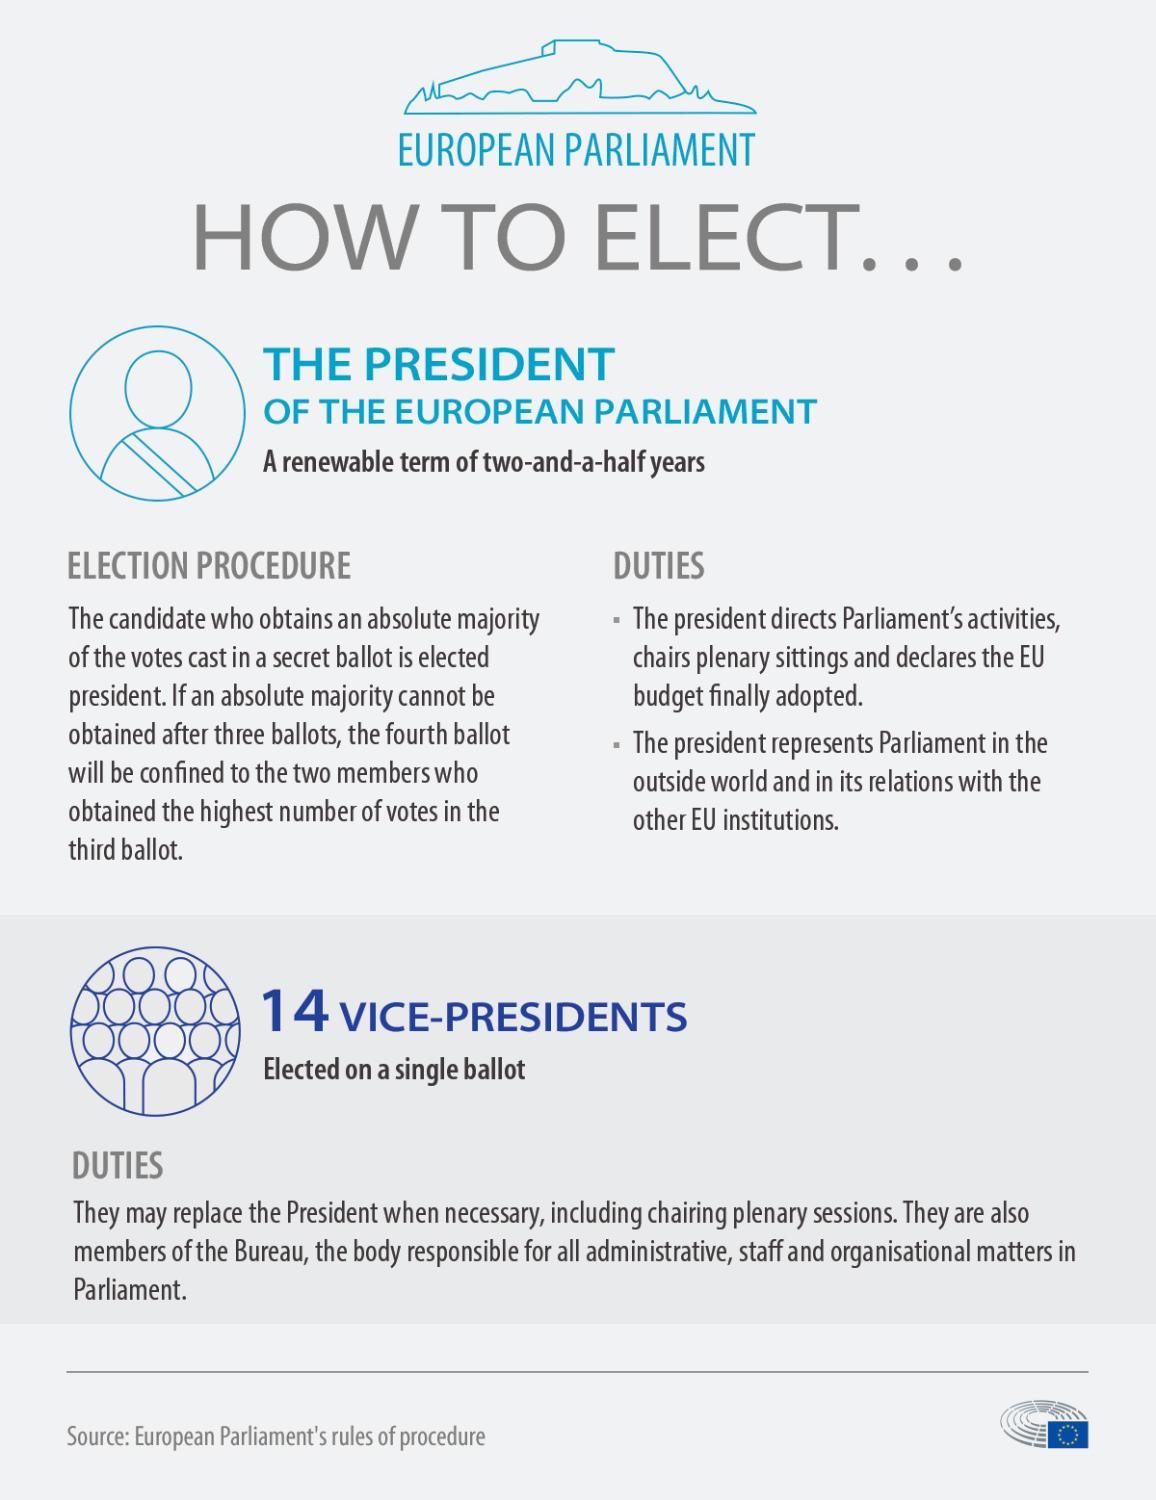 Infografía sobre la elección y funciones del presidente y los vicepresidentes del Parlamento Europeo